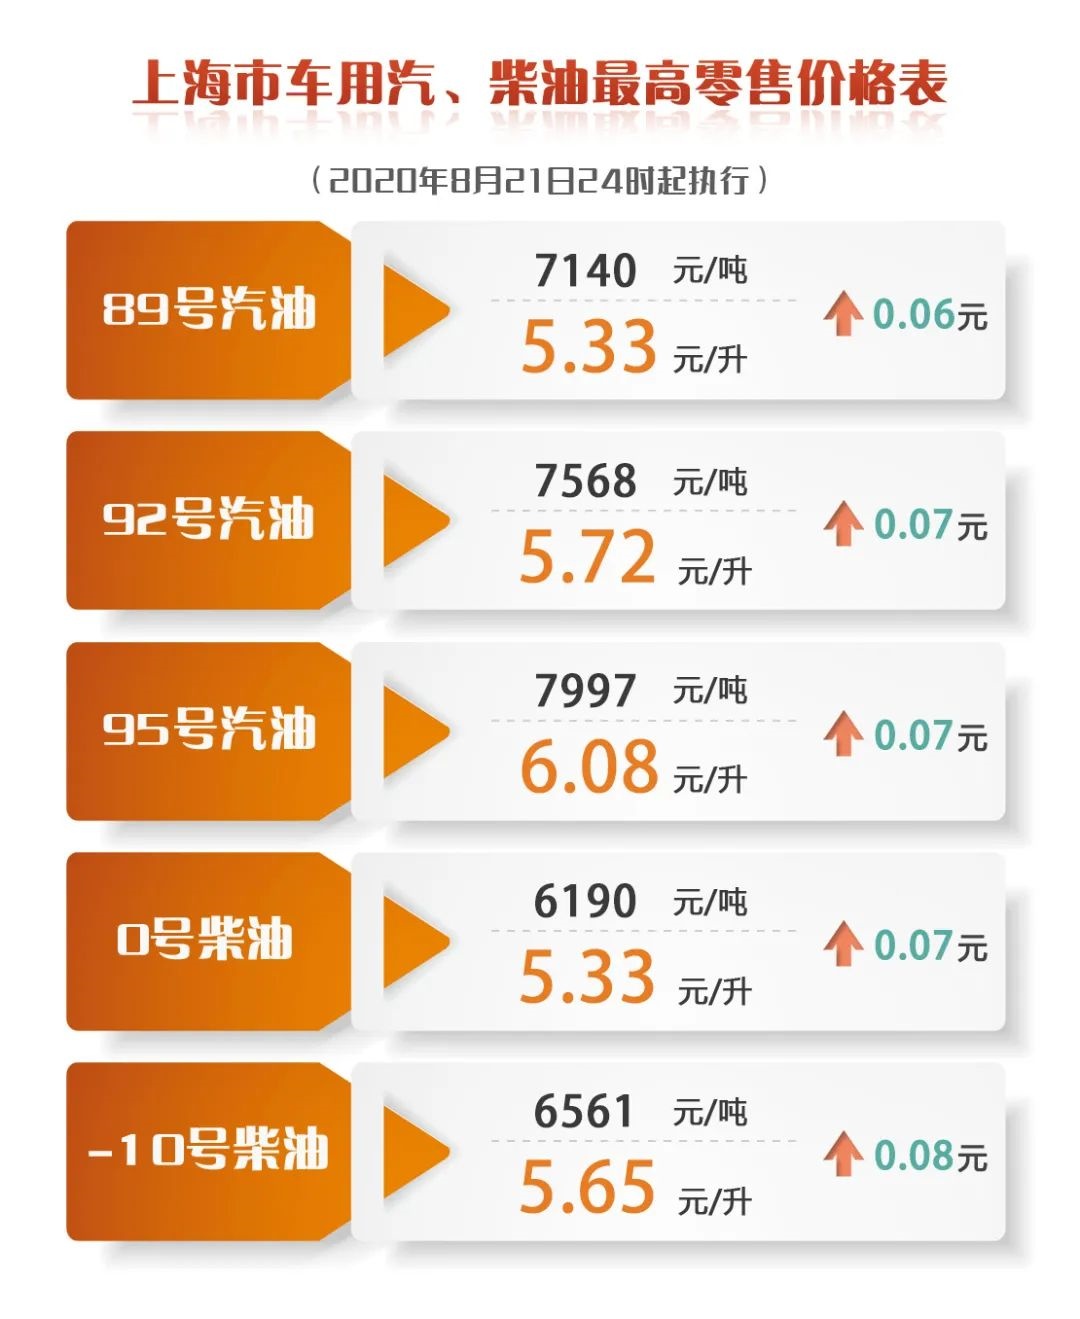 上海成品油价8月22日零点起上调